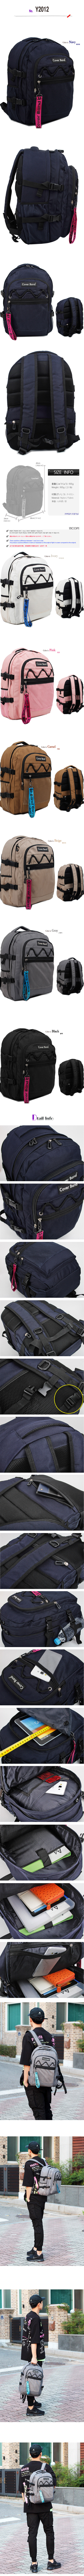 backpackY2012.jpg